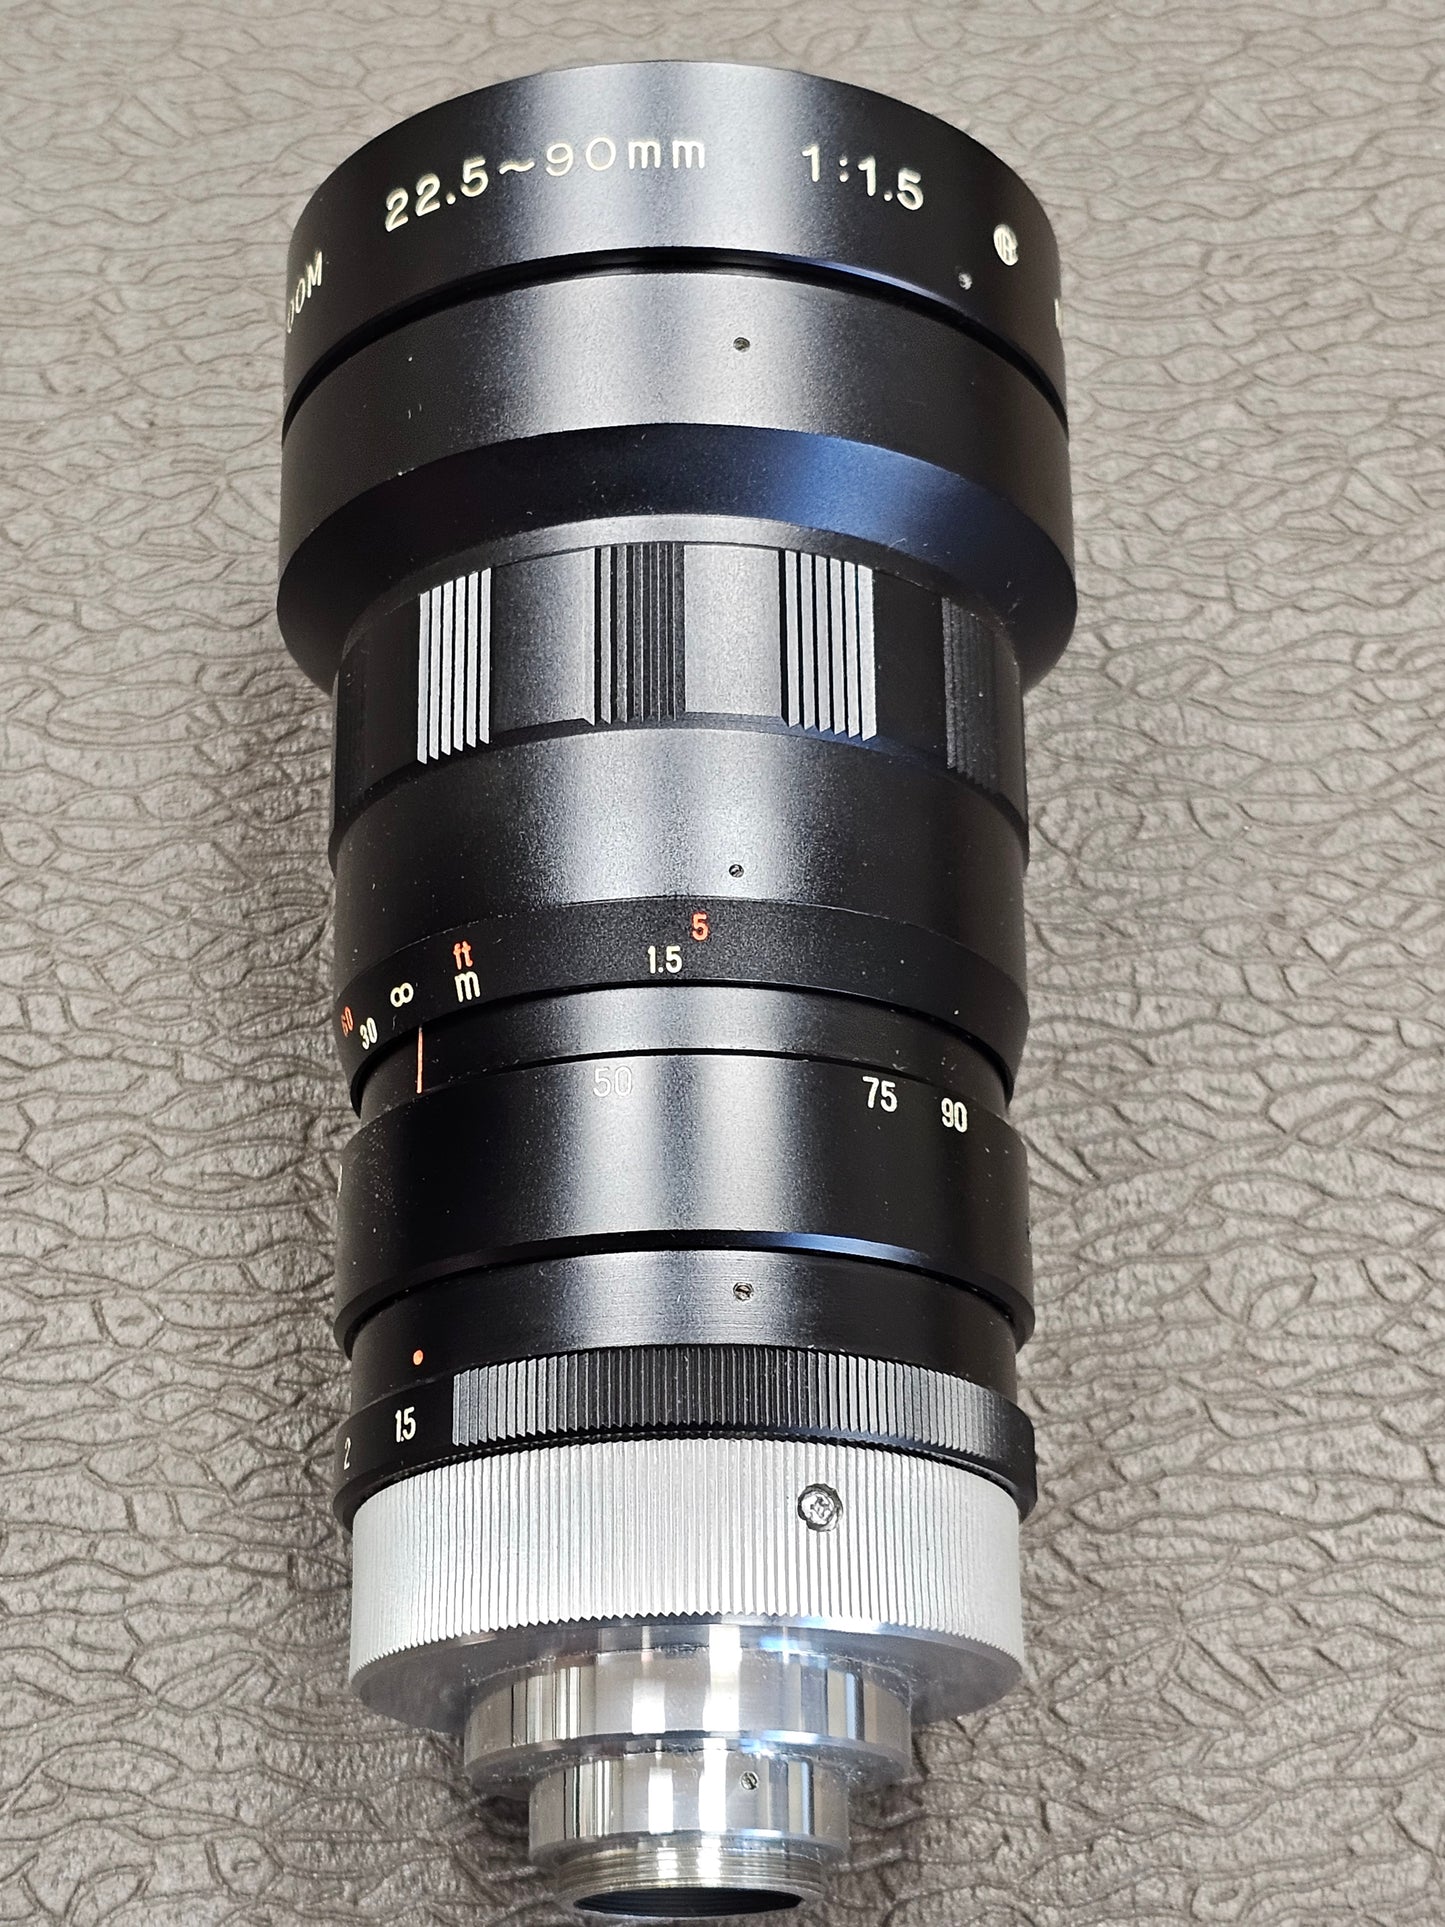 Sun-Cosmicar 22.5-90mm f1.5 TV-16 Zoom Lens C-Mount S# 71516